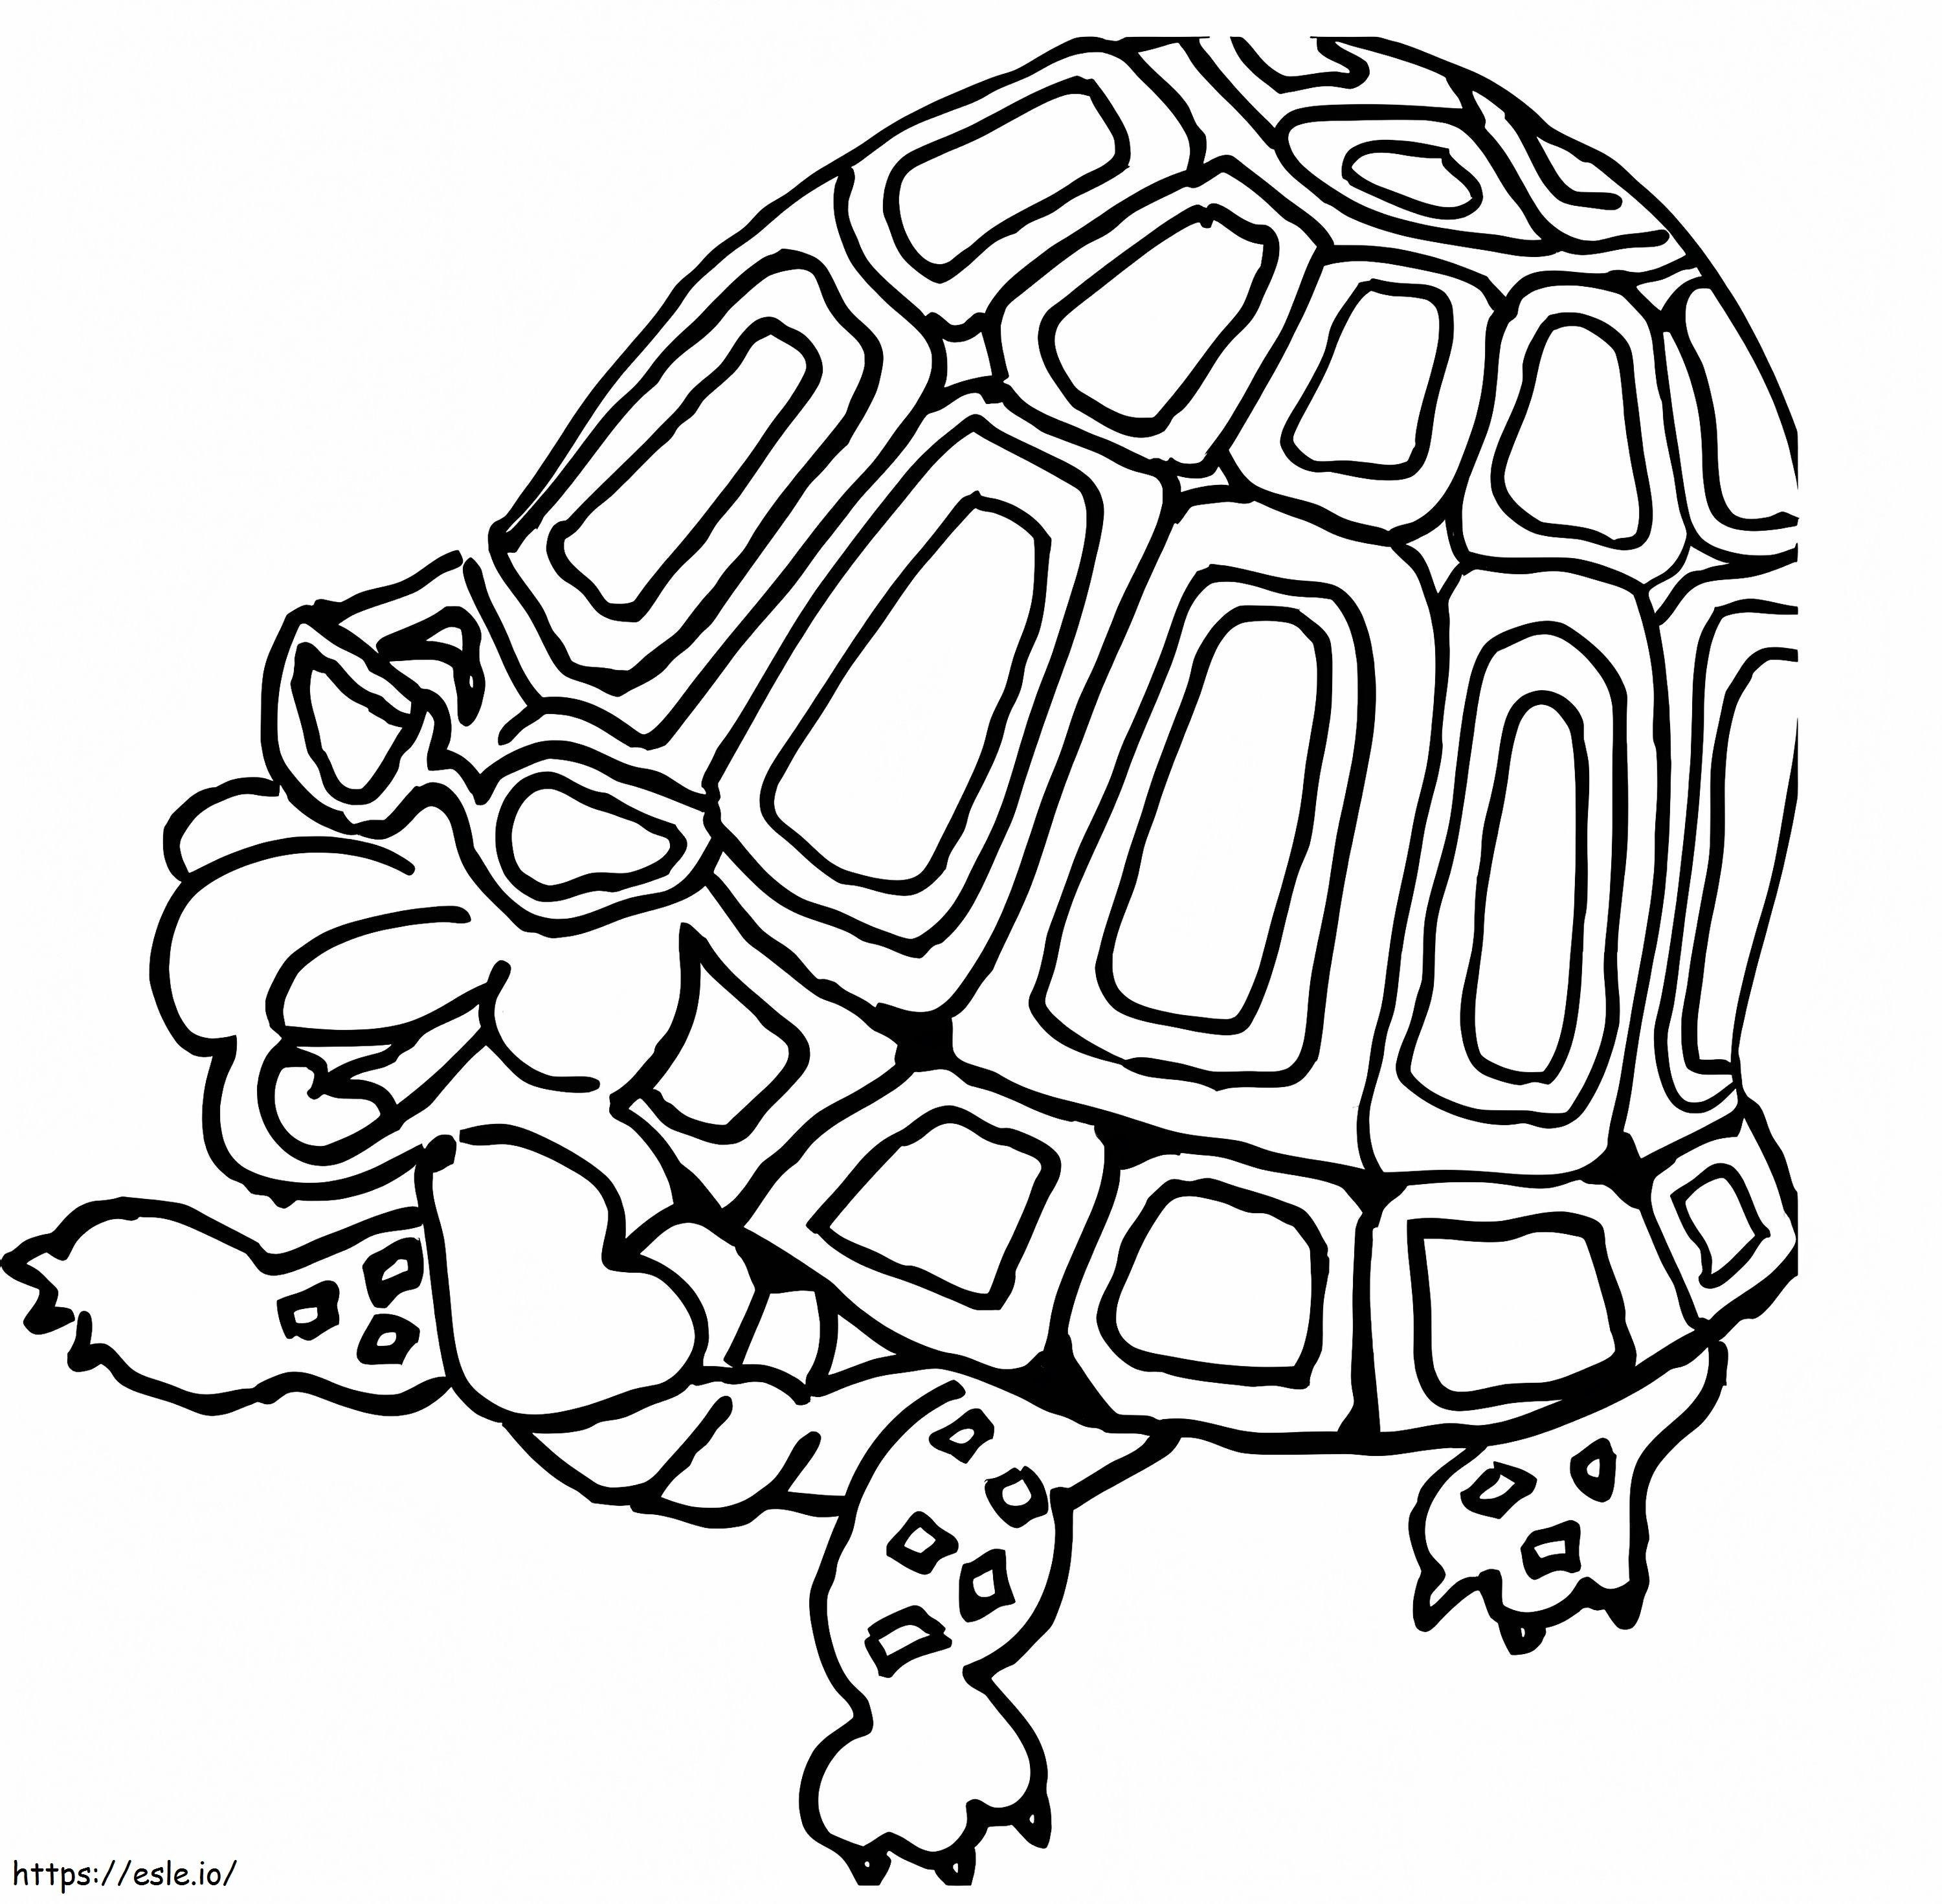 tartaruga divertida para colorir